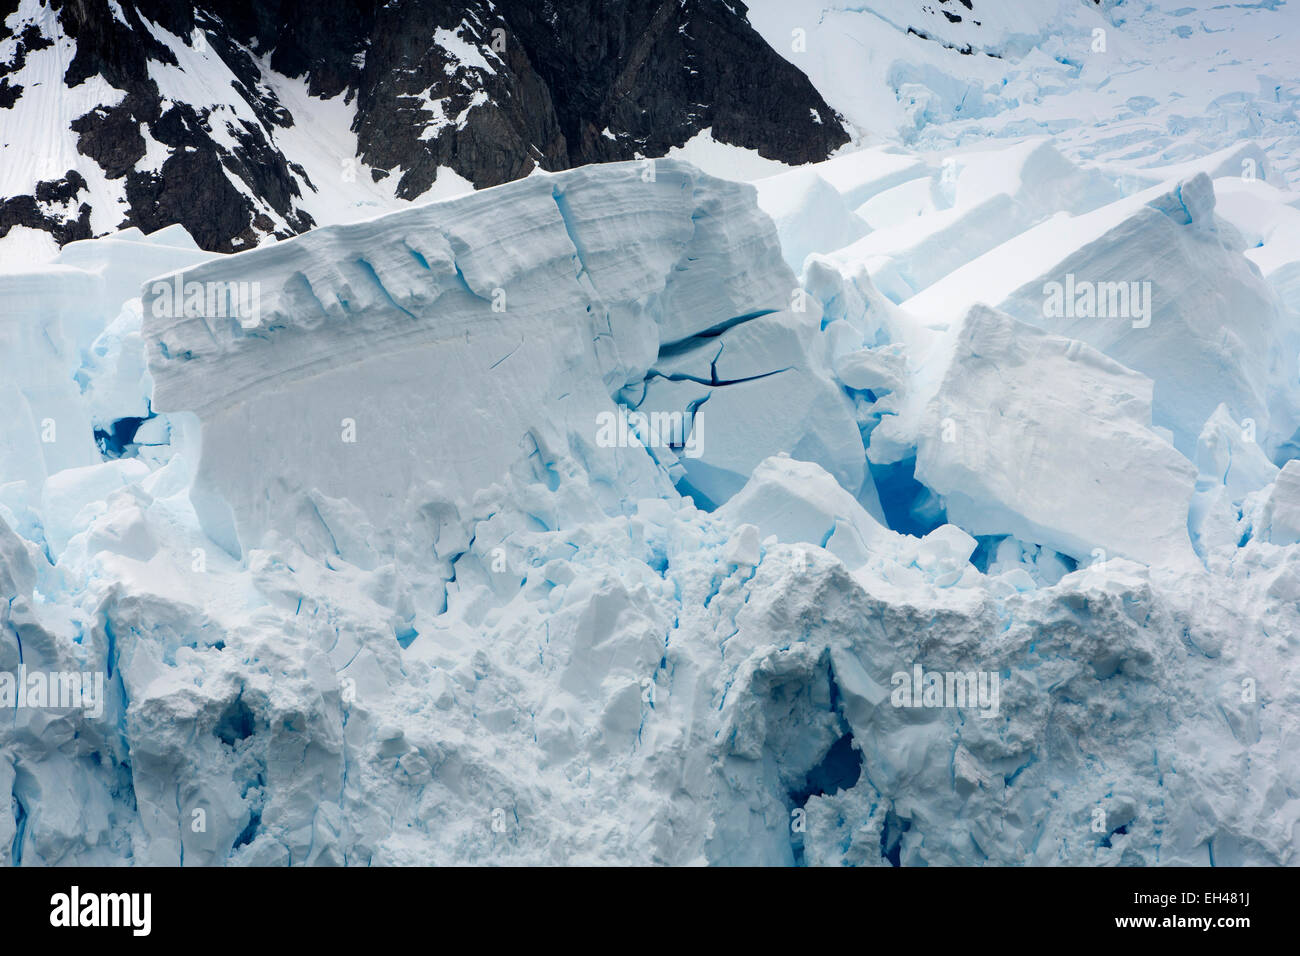 L'antarctique, Paradise Bay, fin de la rupture dans la mer pour former des icebergs Banque D'Images